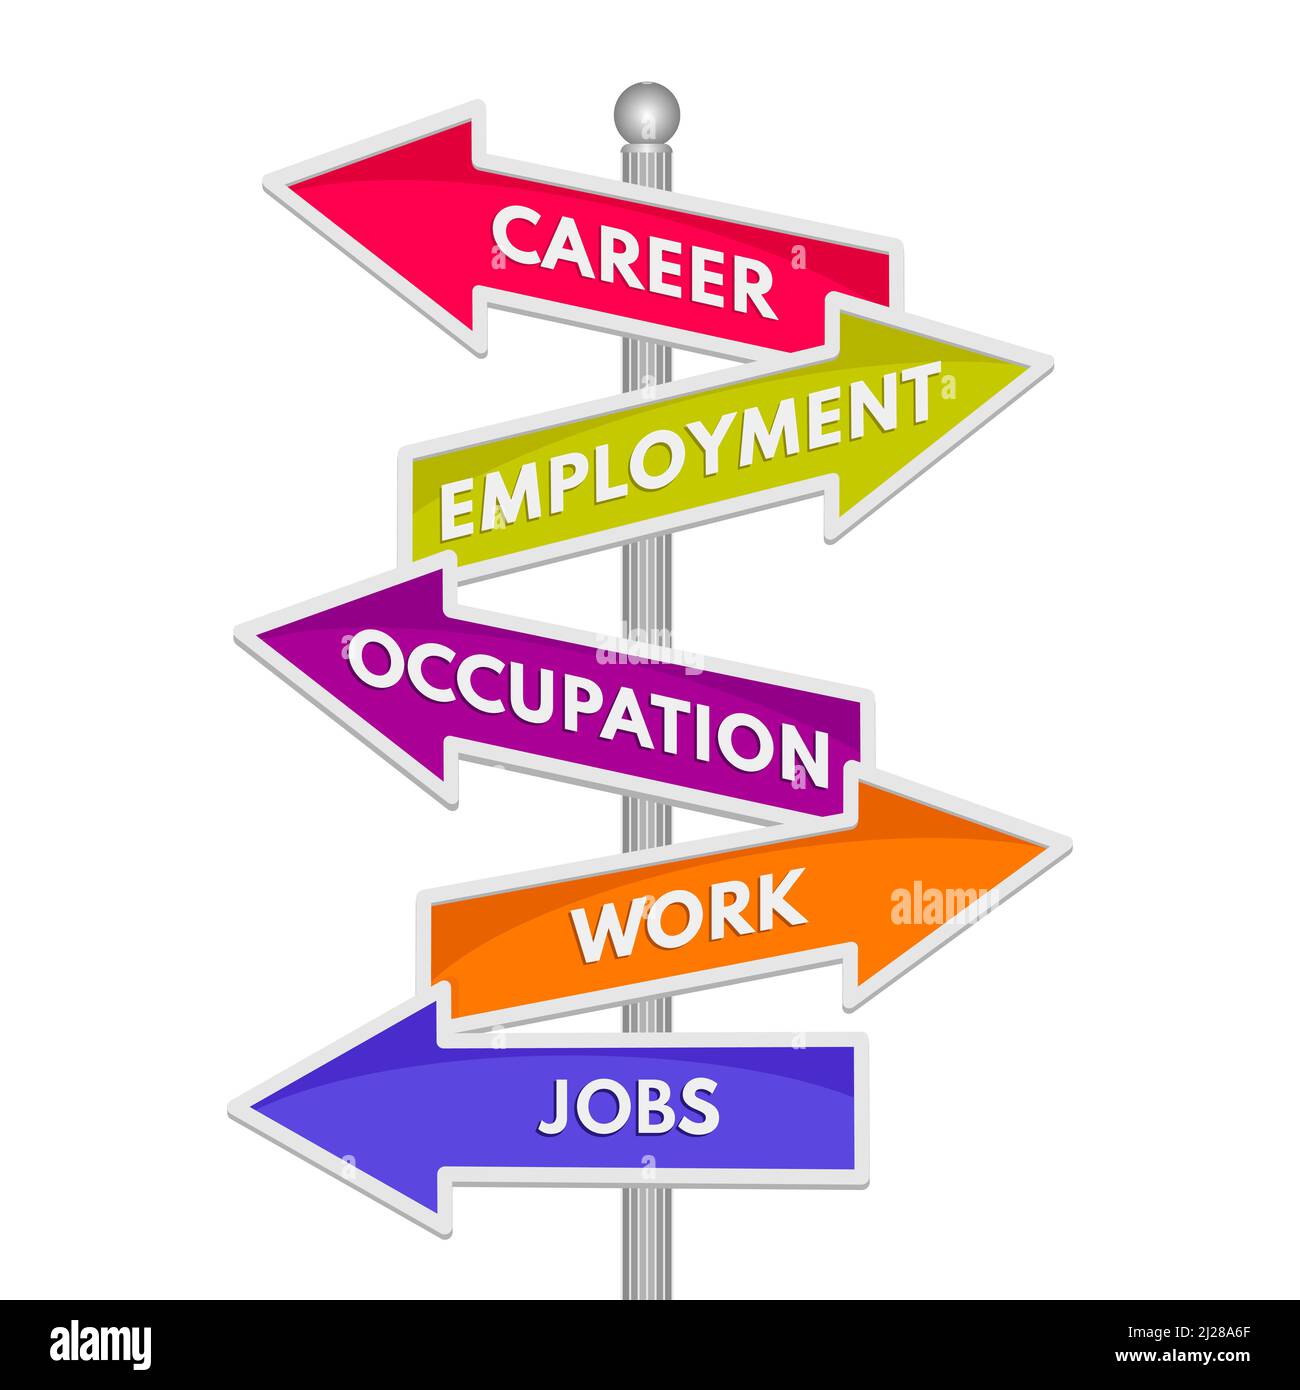 Karriere, Beschäftigung, Beruf, Arbeit und Arbeitsplätze Worte auf Wegweiser isoliert auf weißem Hintergrund. Vektorgrafik Stock Vektor